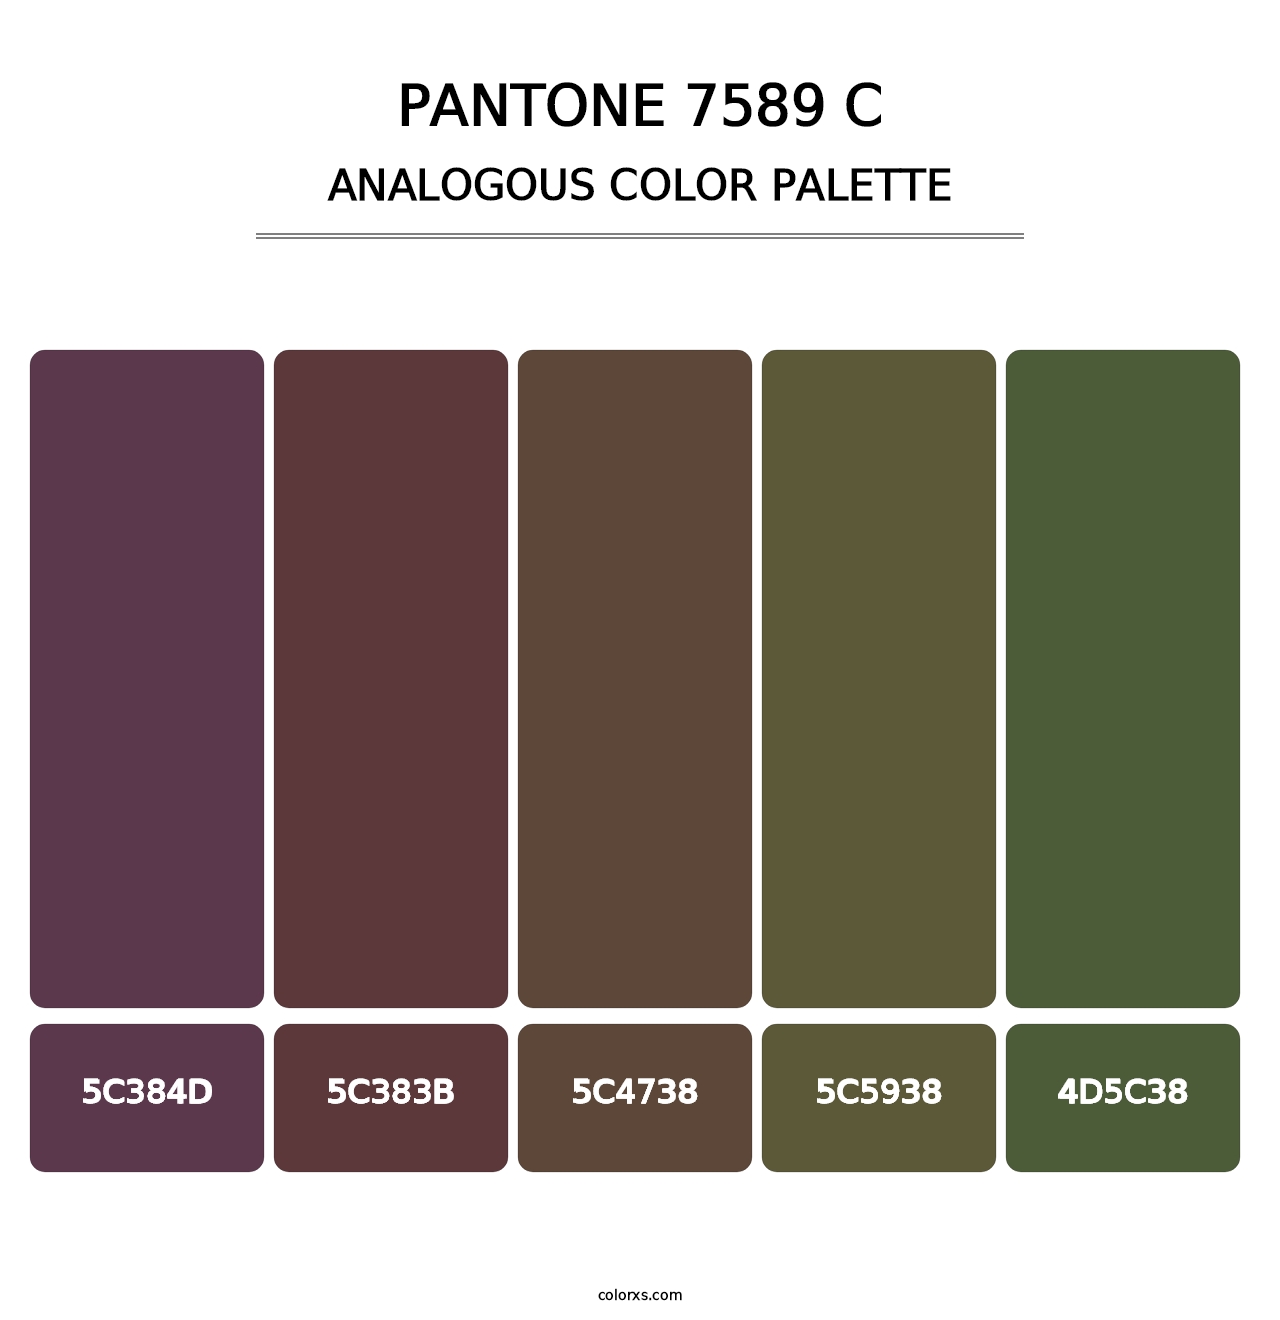 PANTONE 7589 C - Analogous Color Palette